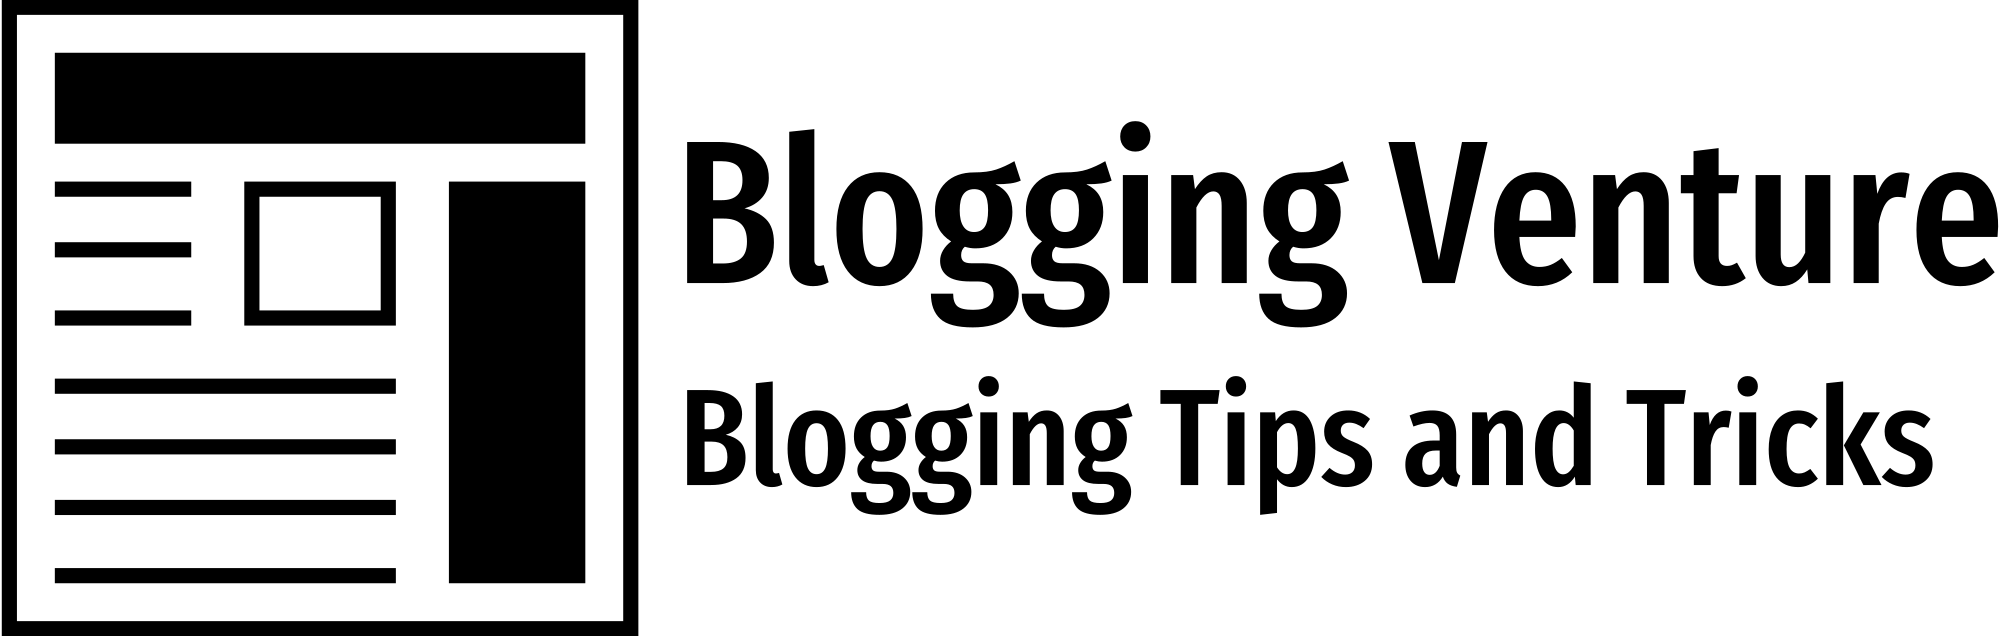 Blogging Venture